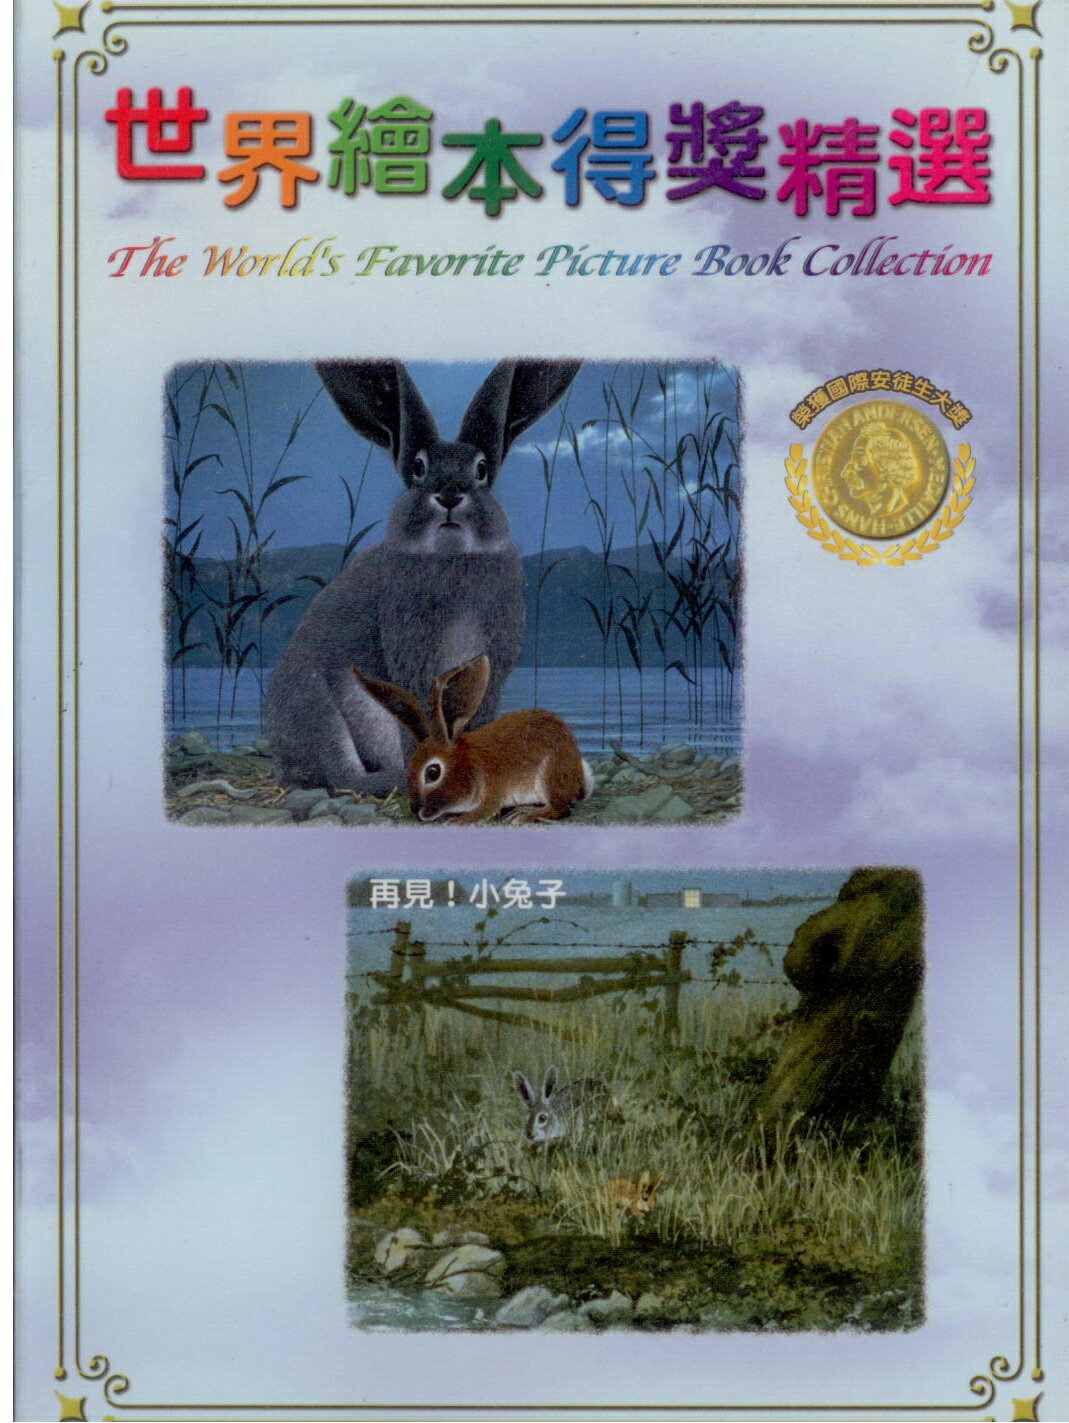 世界繪本得獎精選10 再見!小兔子DVD